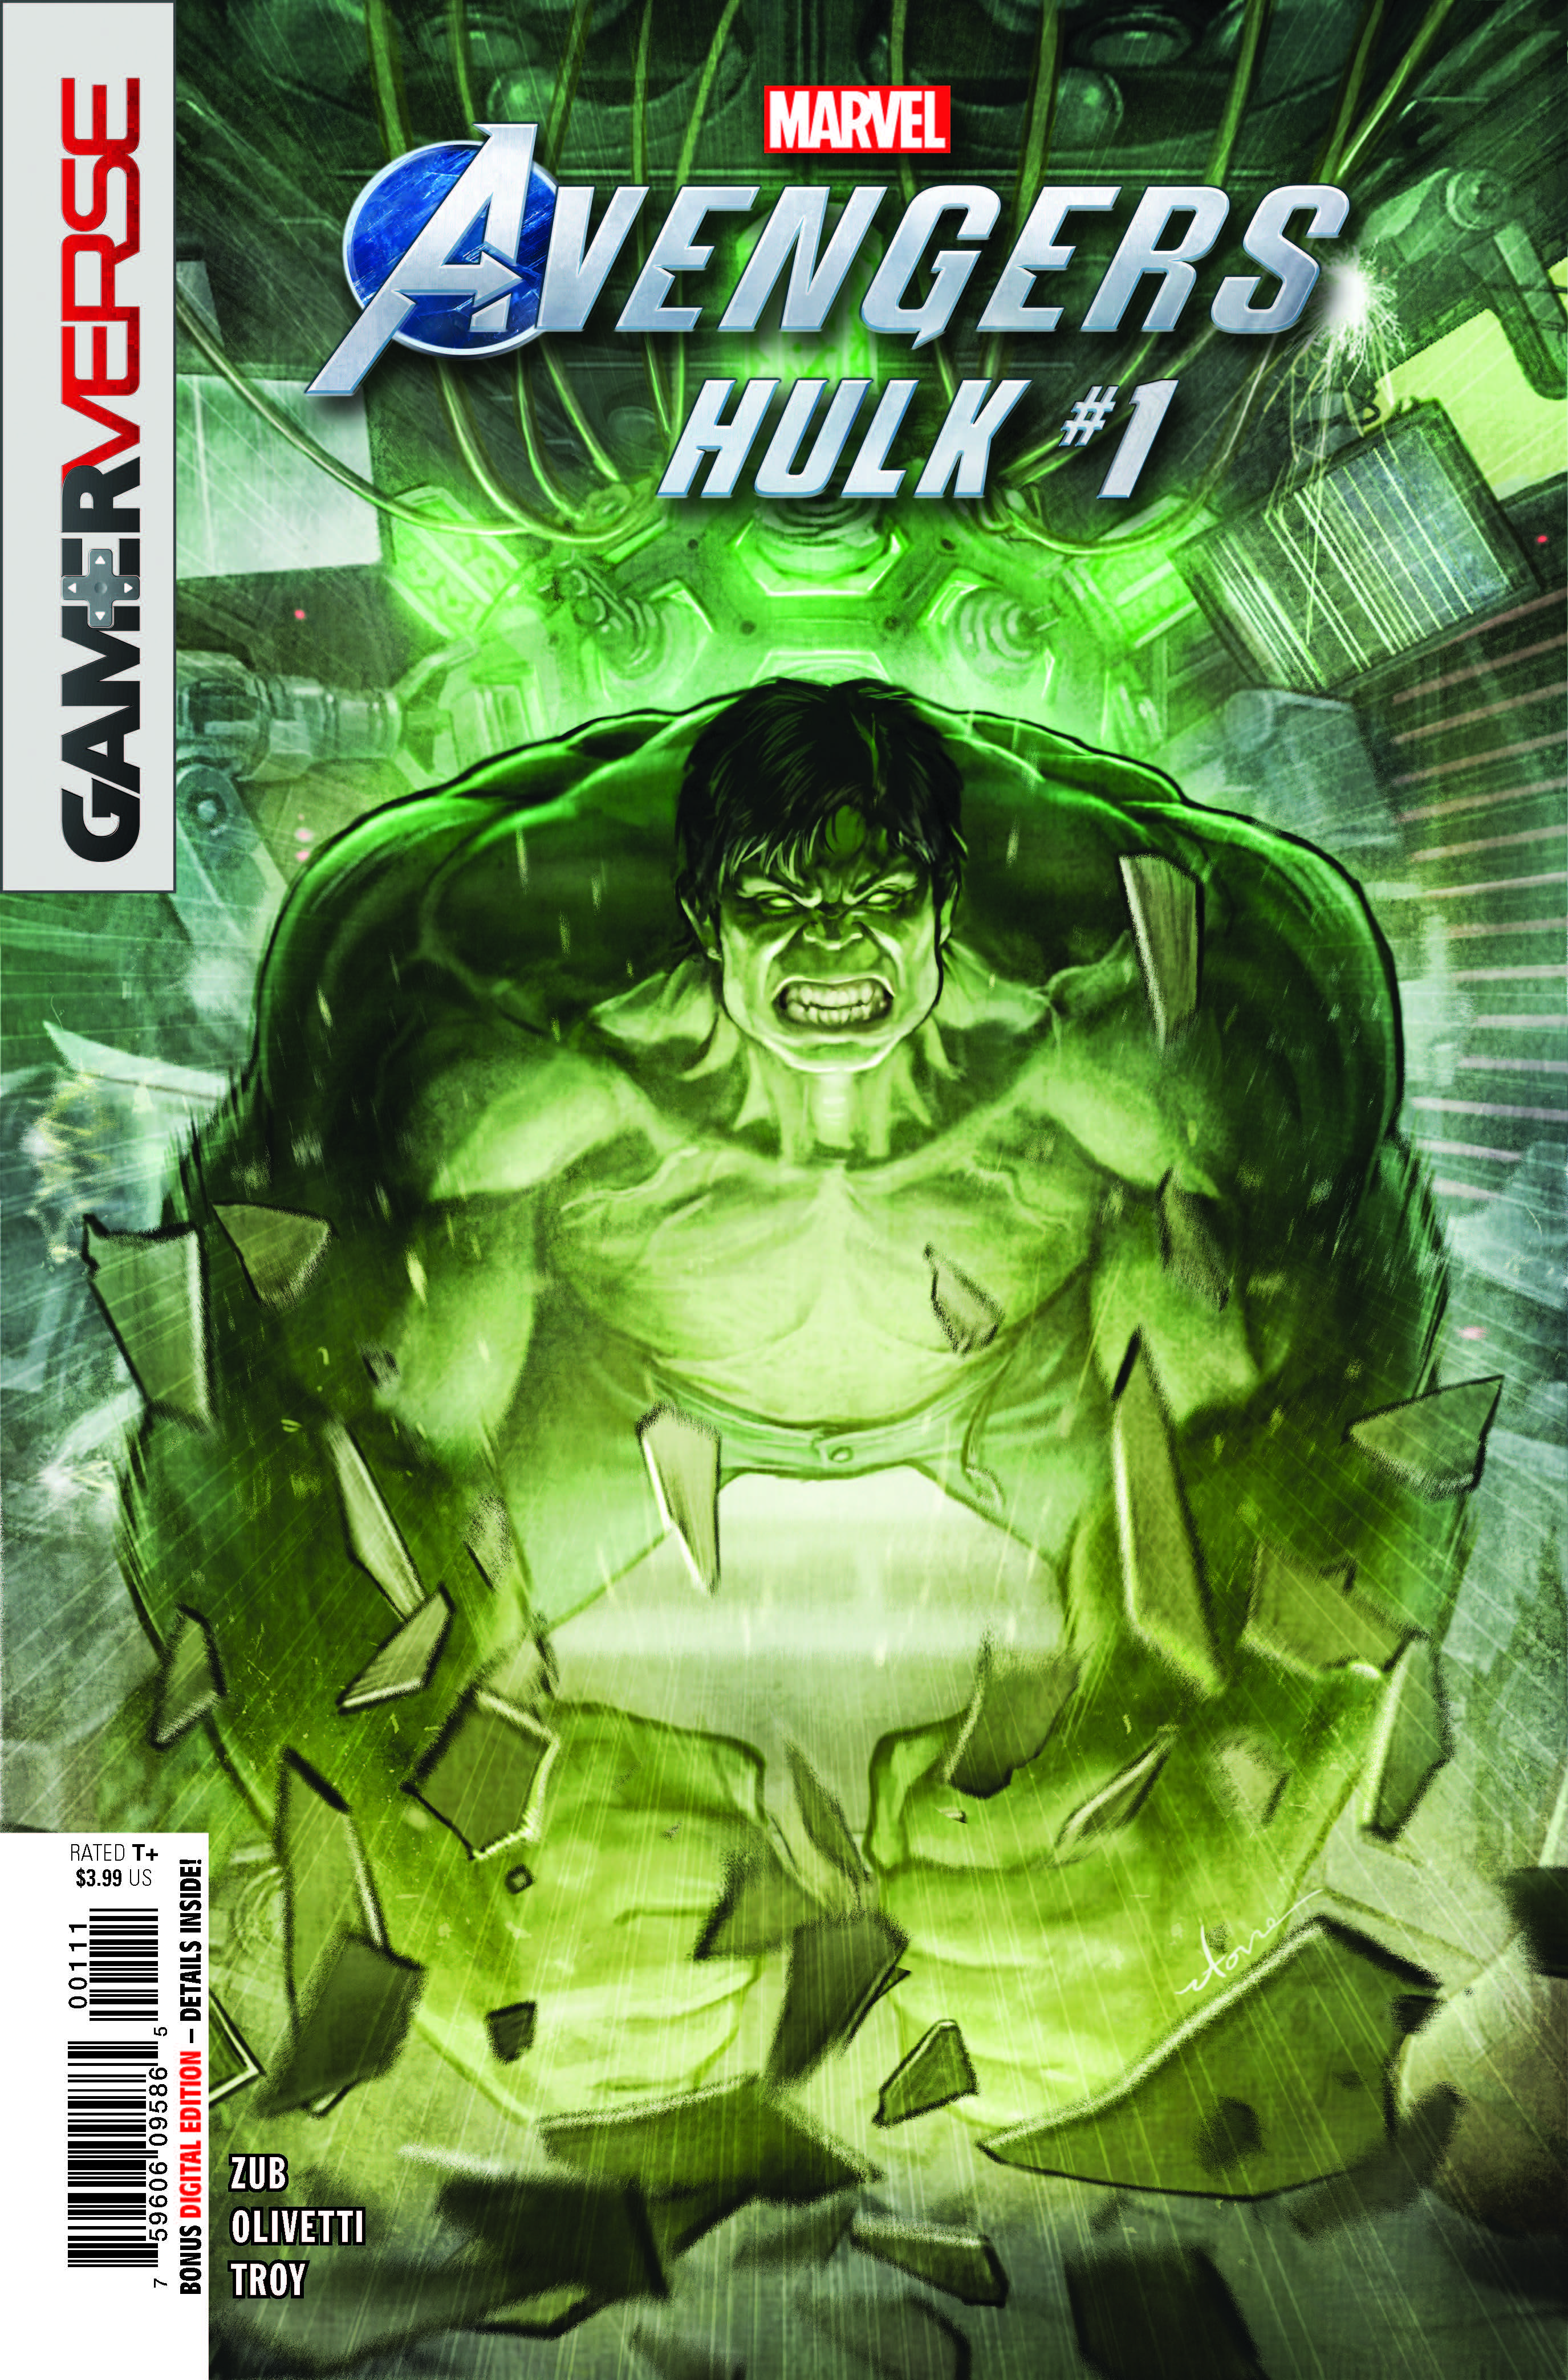 Marvel Avengers Hulk #1